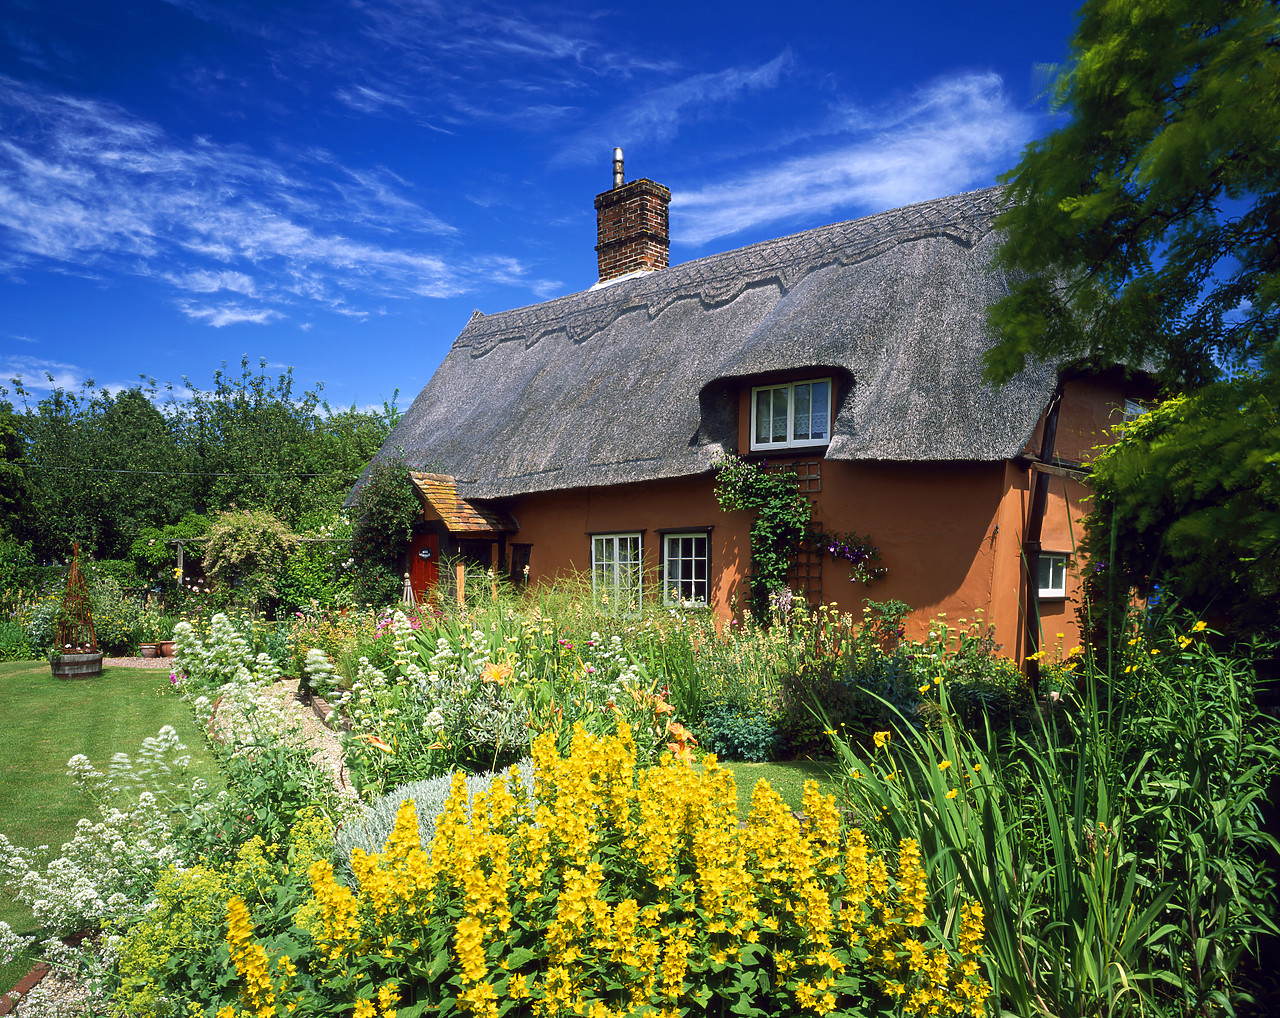 #030136-1 - Thatch Cottage & Garden, Suffolk, England